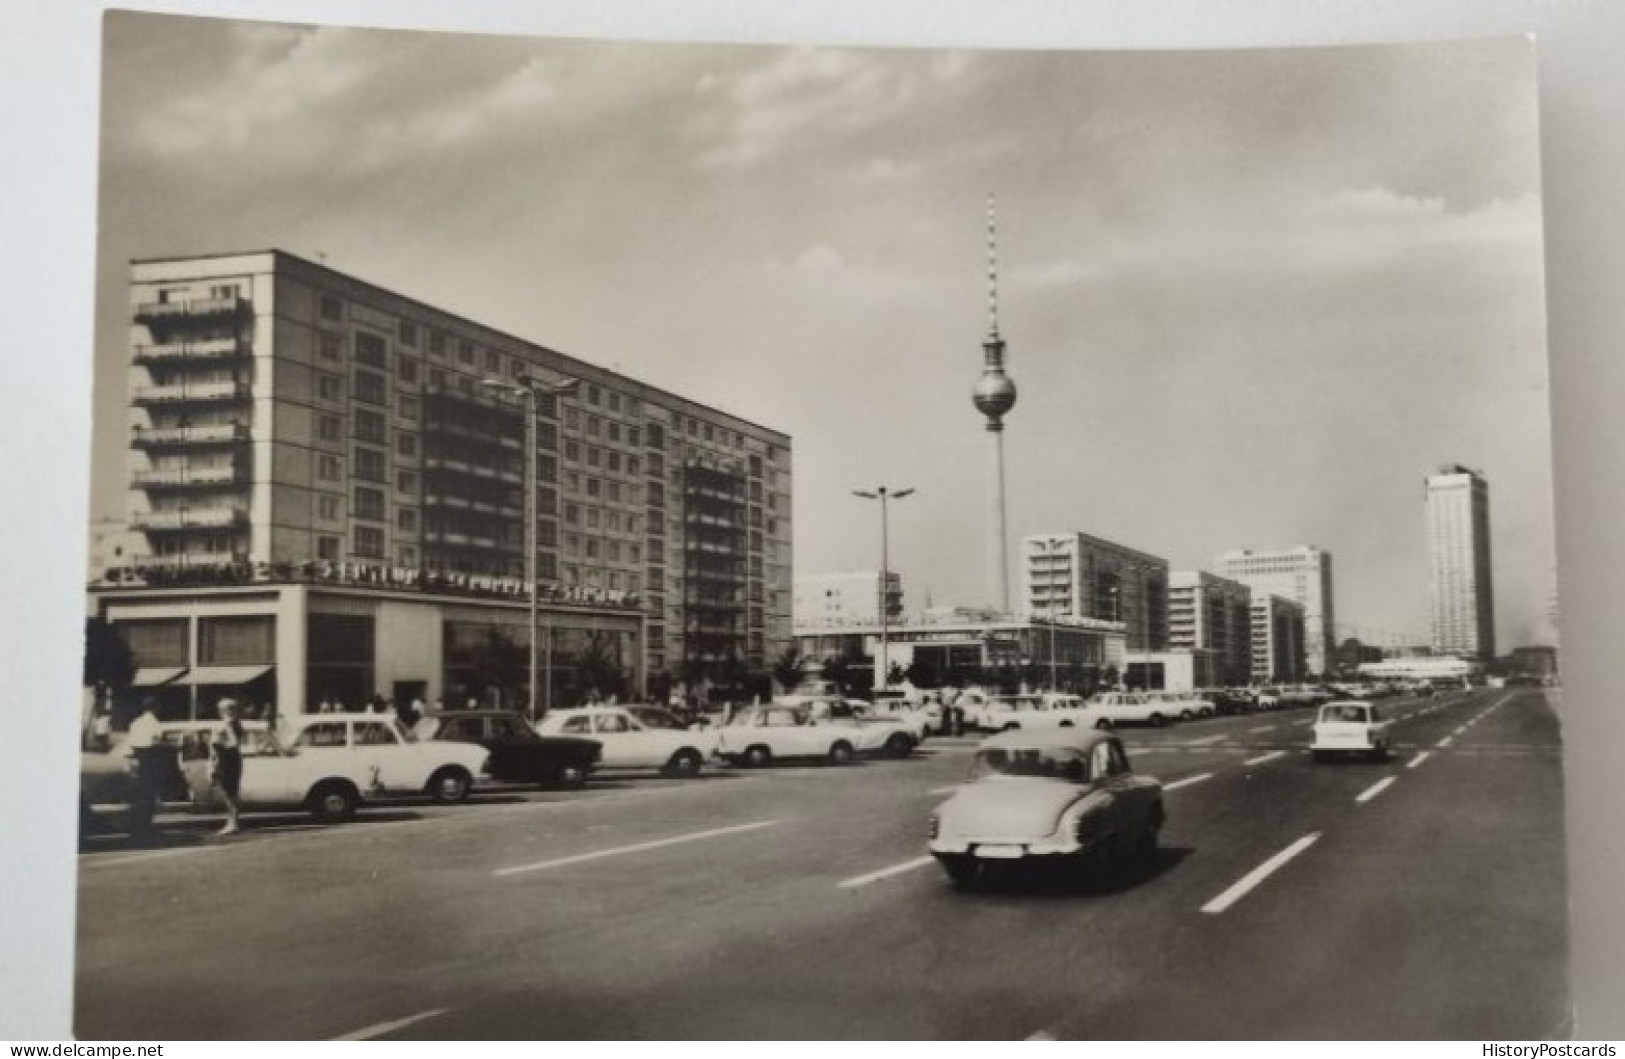 Berlin, Karl-Marx-Allee, Fernsehturm, Alte DDR Autos, Wartburg 311, 1969 - Mitte